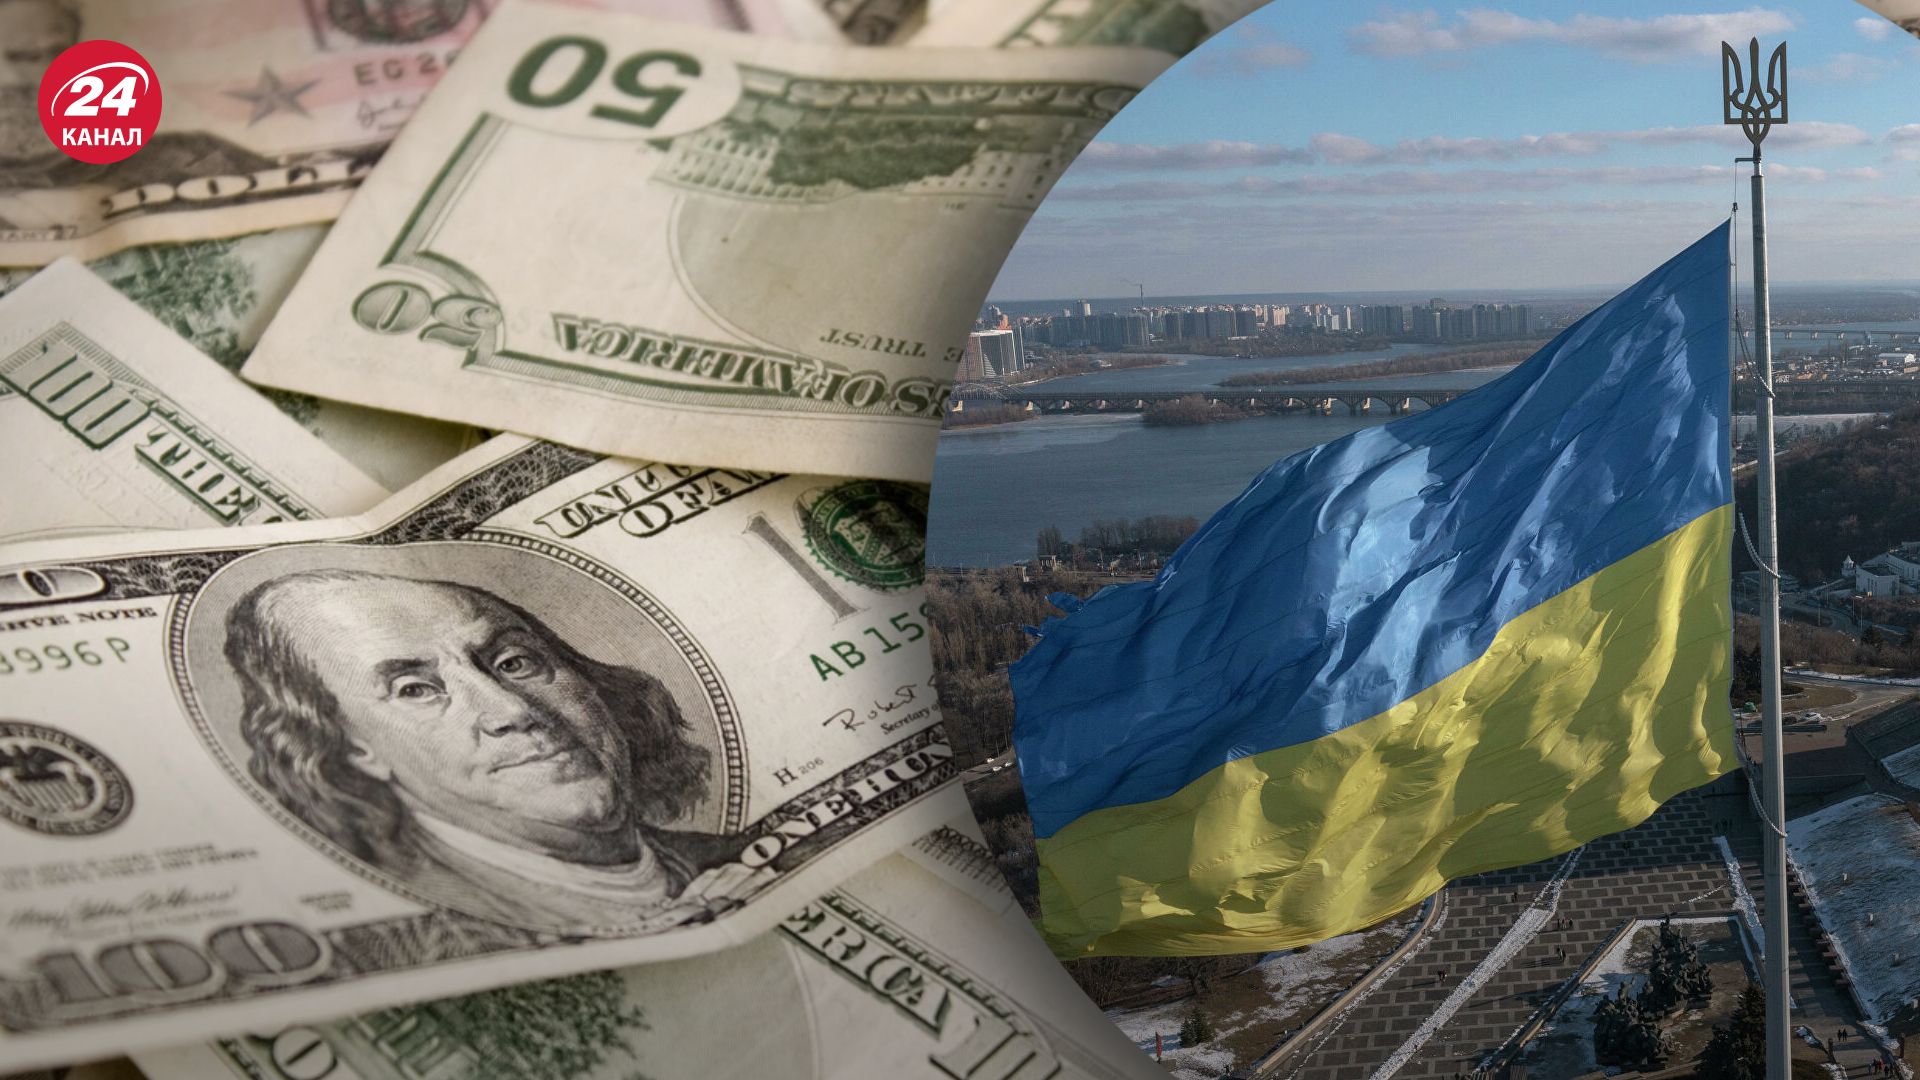 Всемирный банк, МВФ и G7 выделили 115 миллиардов долларов в поддержку Украины на 4 года